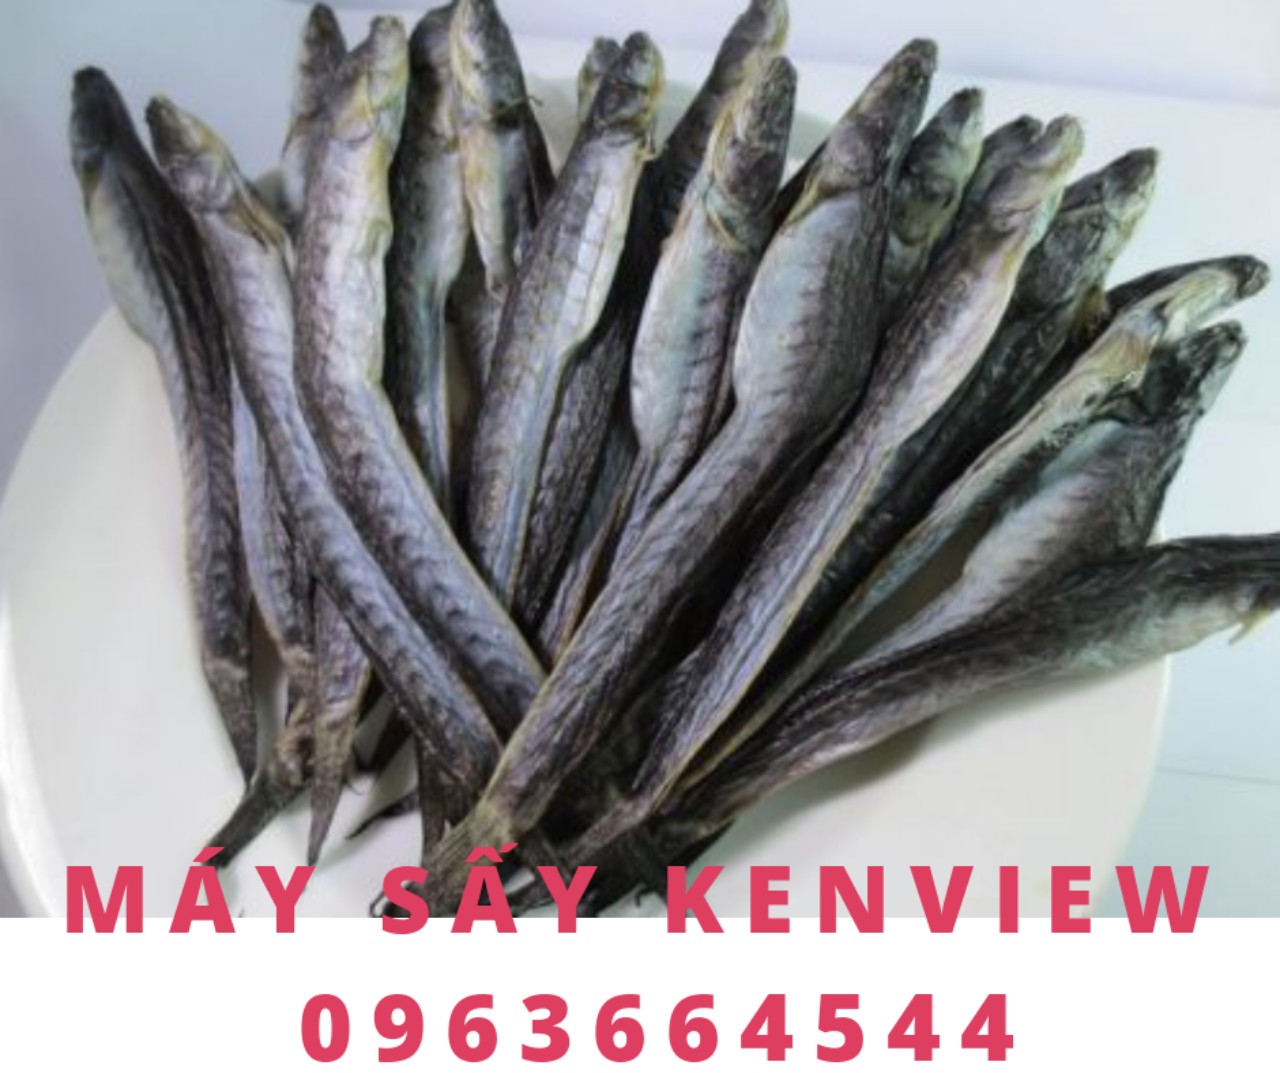 Máy sấy hải sản khô kenview 0963664544